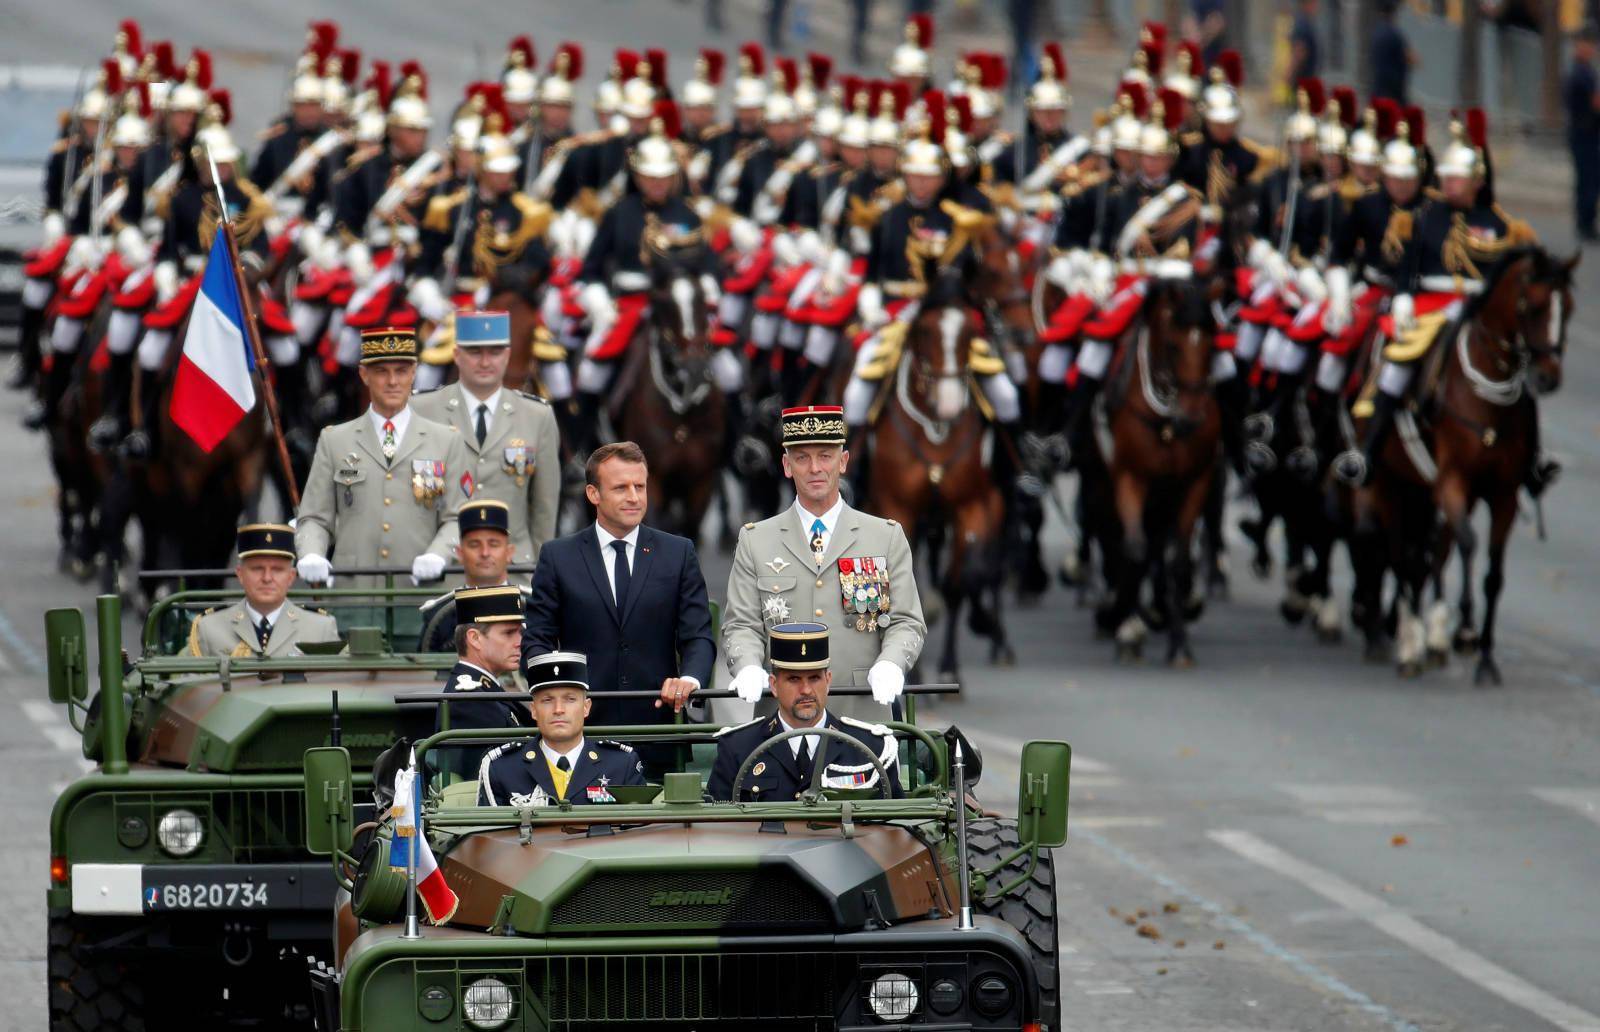 法意国庆日取消阅兵式,土库曼斯坦首次举行胜利日阅兵